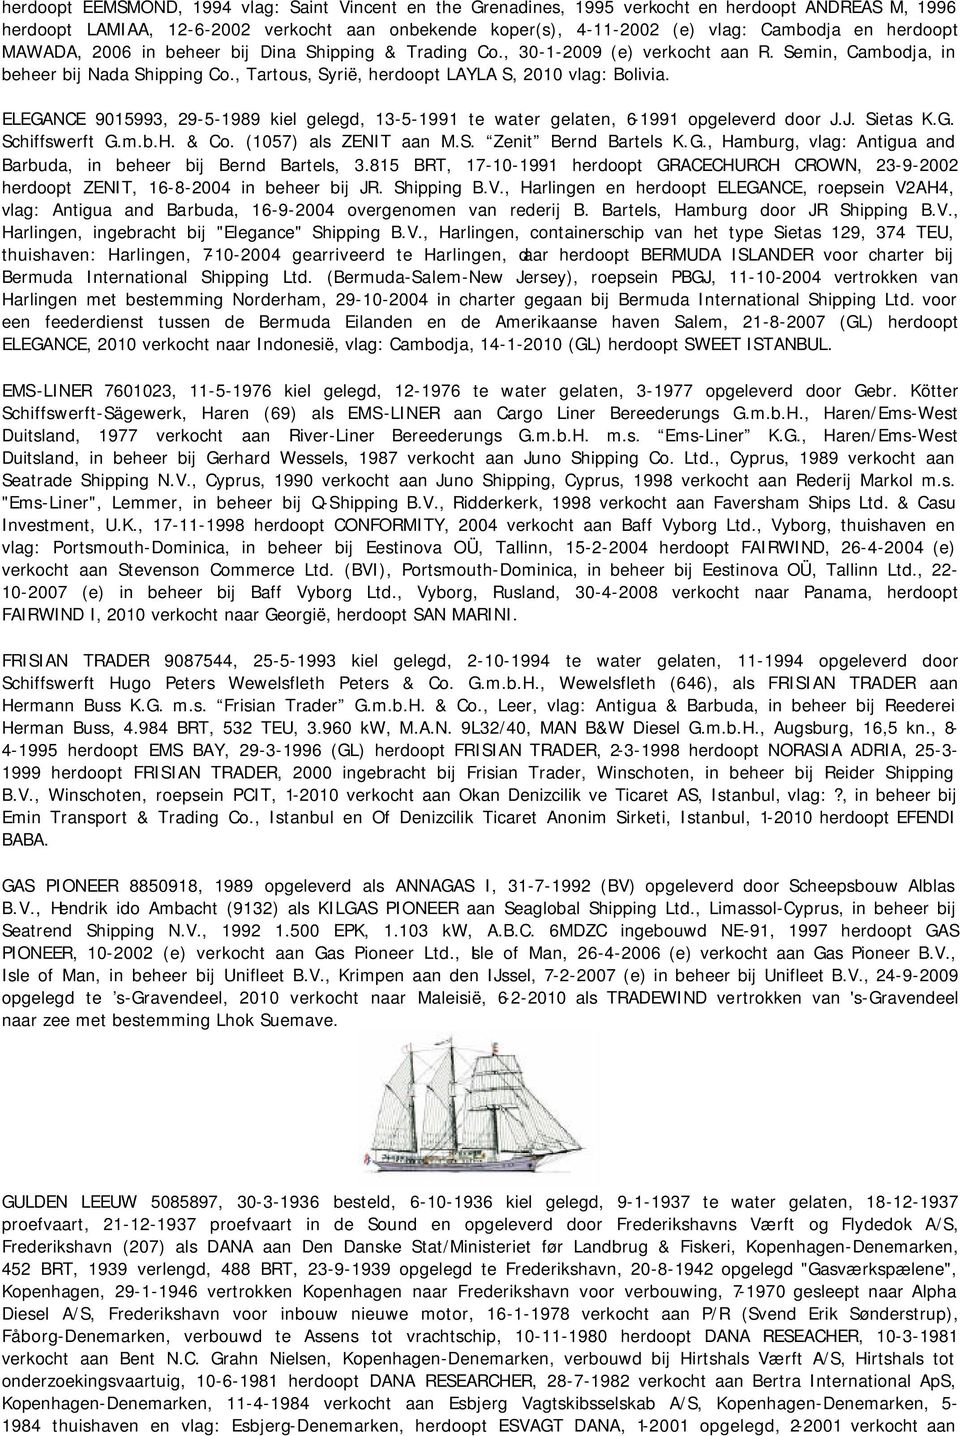 ELEGANCE 9015993, 29-5-1989 kiel gelegd, 13-5-1991 te water gelaten, 6-1991 opgeleverd door J.J. Sietas K.G. Schiffswerft G.m.b.H. & Co. (1057) als ZENIT aan M.S. Zenit Bernd Bartels K.G., Hamburg, vlag: Antigua and Barbuda, in beheer bij Bernd Bartels, 3.